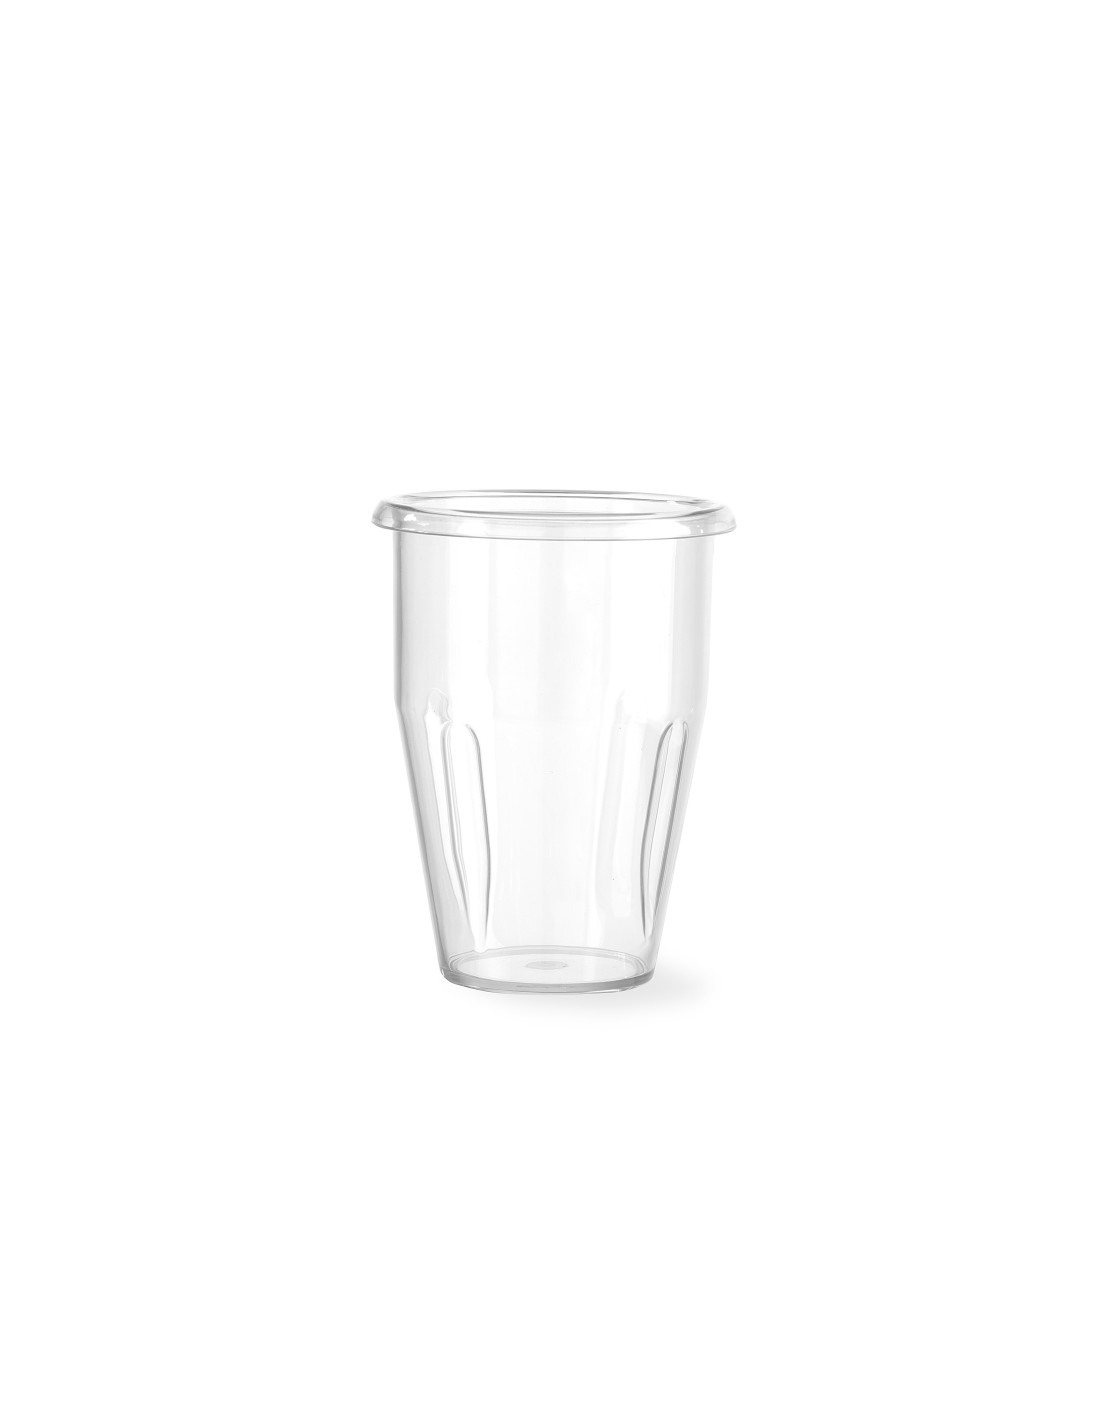 Bicchiere in policarbonato - Per frullatori Milkshake - Design by bronwasser